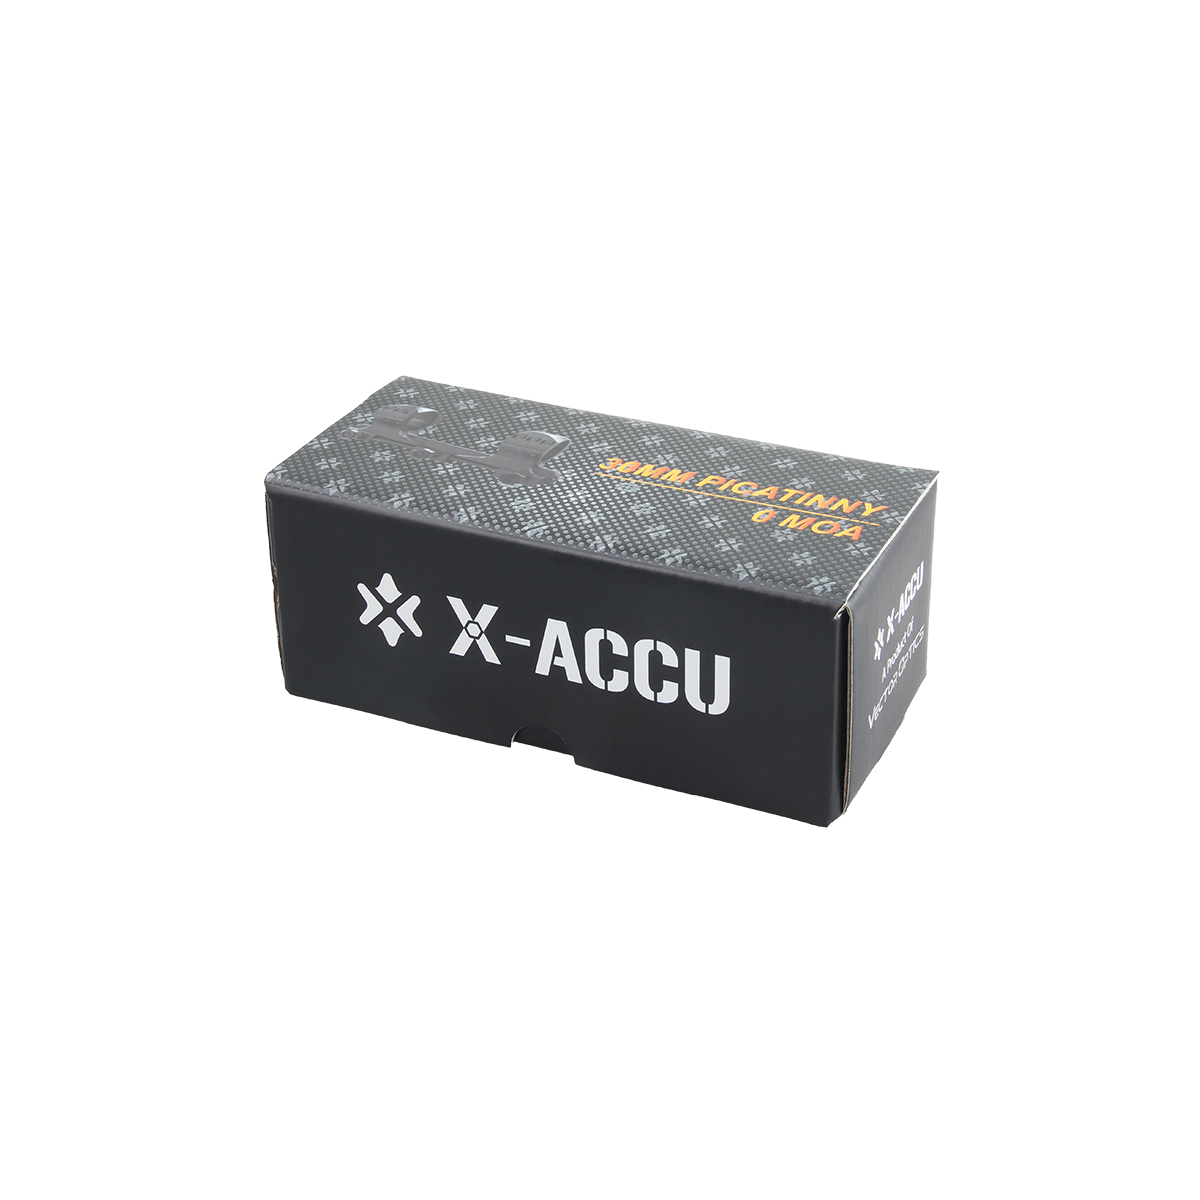 X-Accu 30mm 1.4